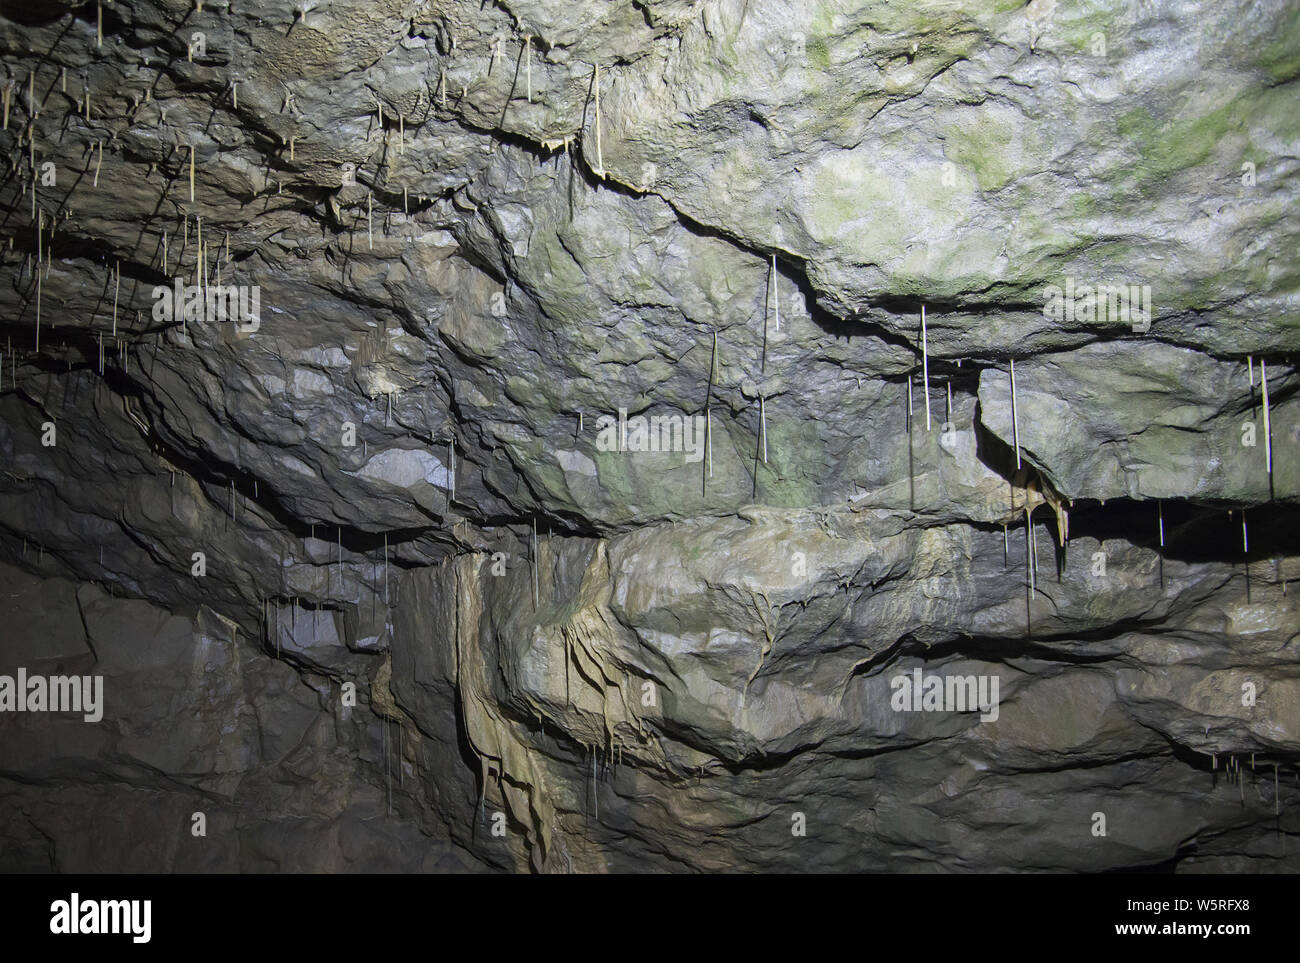 Im Inneren eines großen unterirdischen Höhle Höhle mit Calcit Stalaktiten, die von der Decke hängen Stockfoto